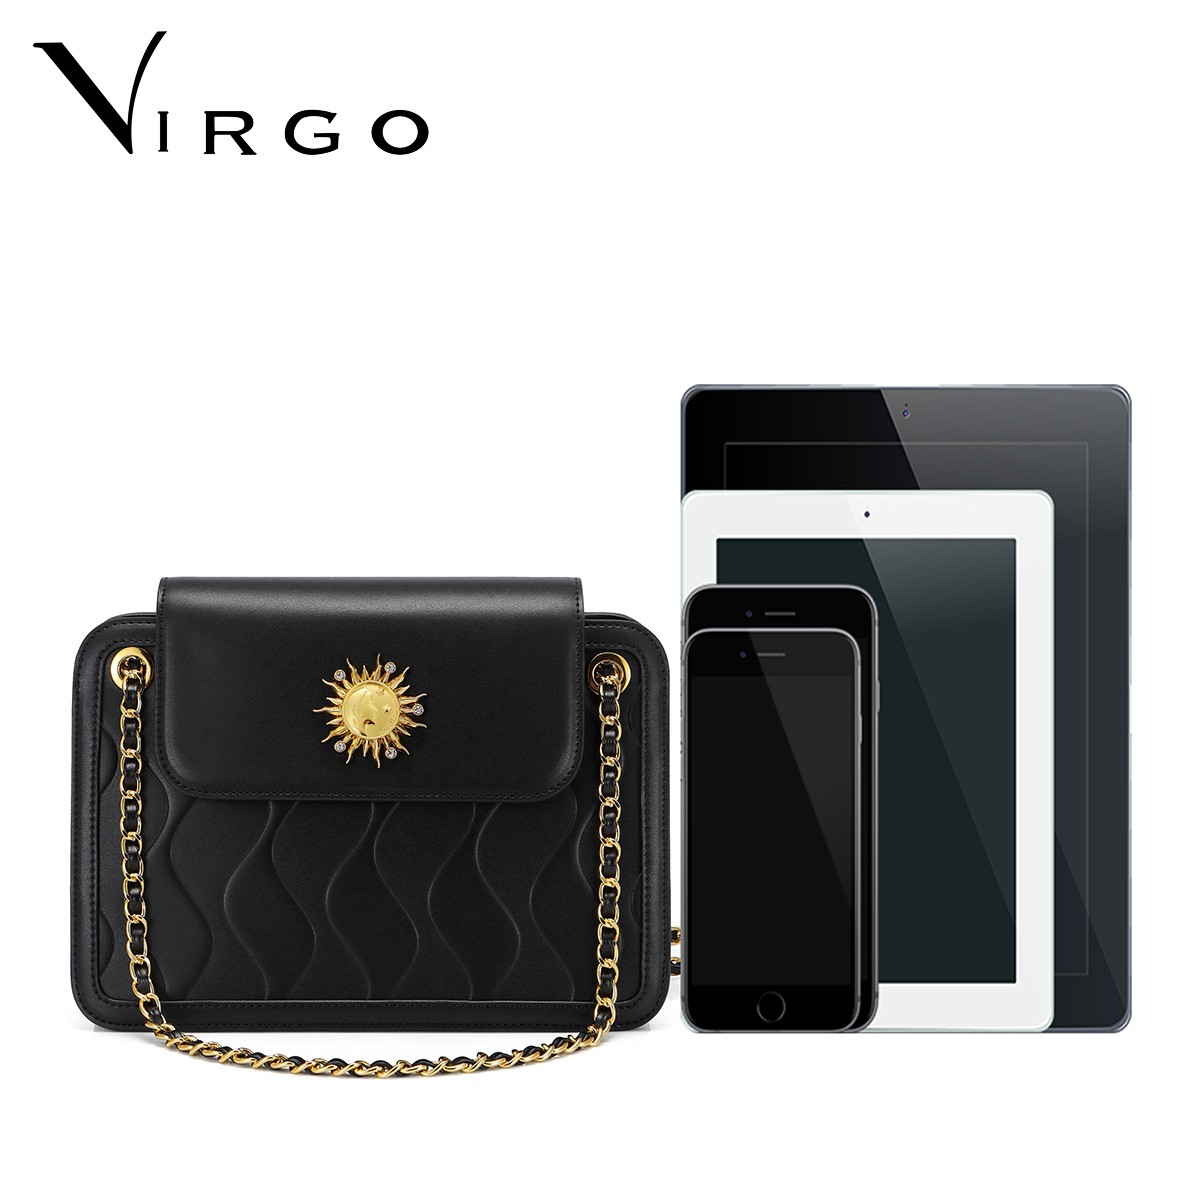 Túi nữ thời trang Just Star Virgo VG675